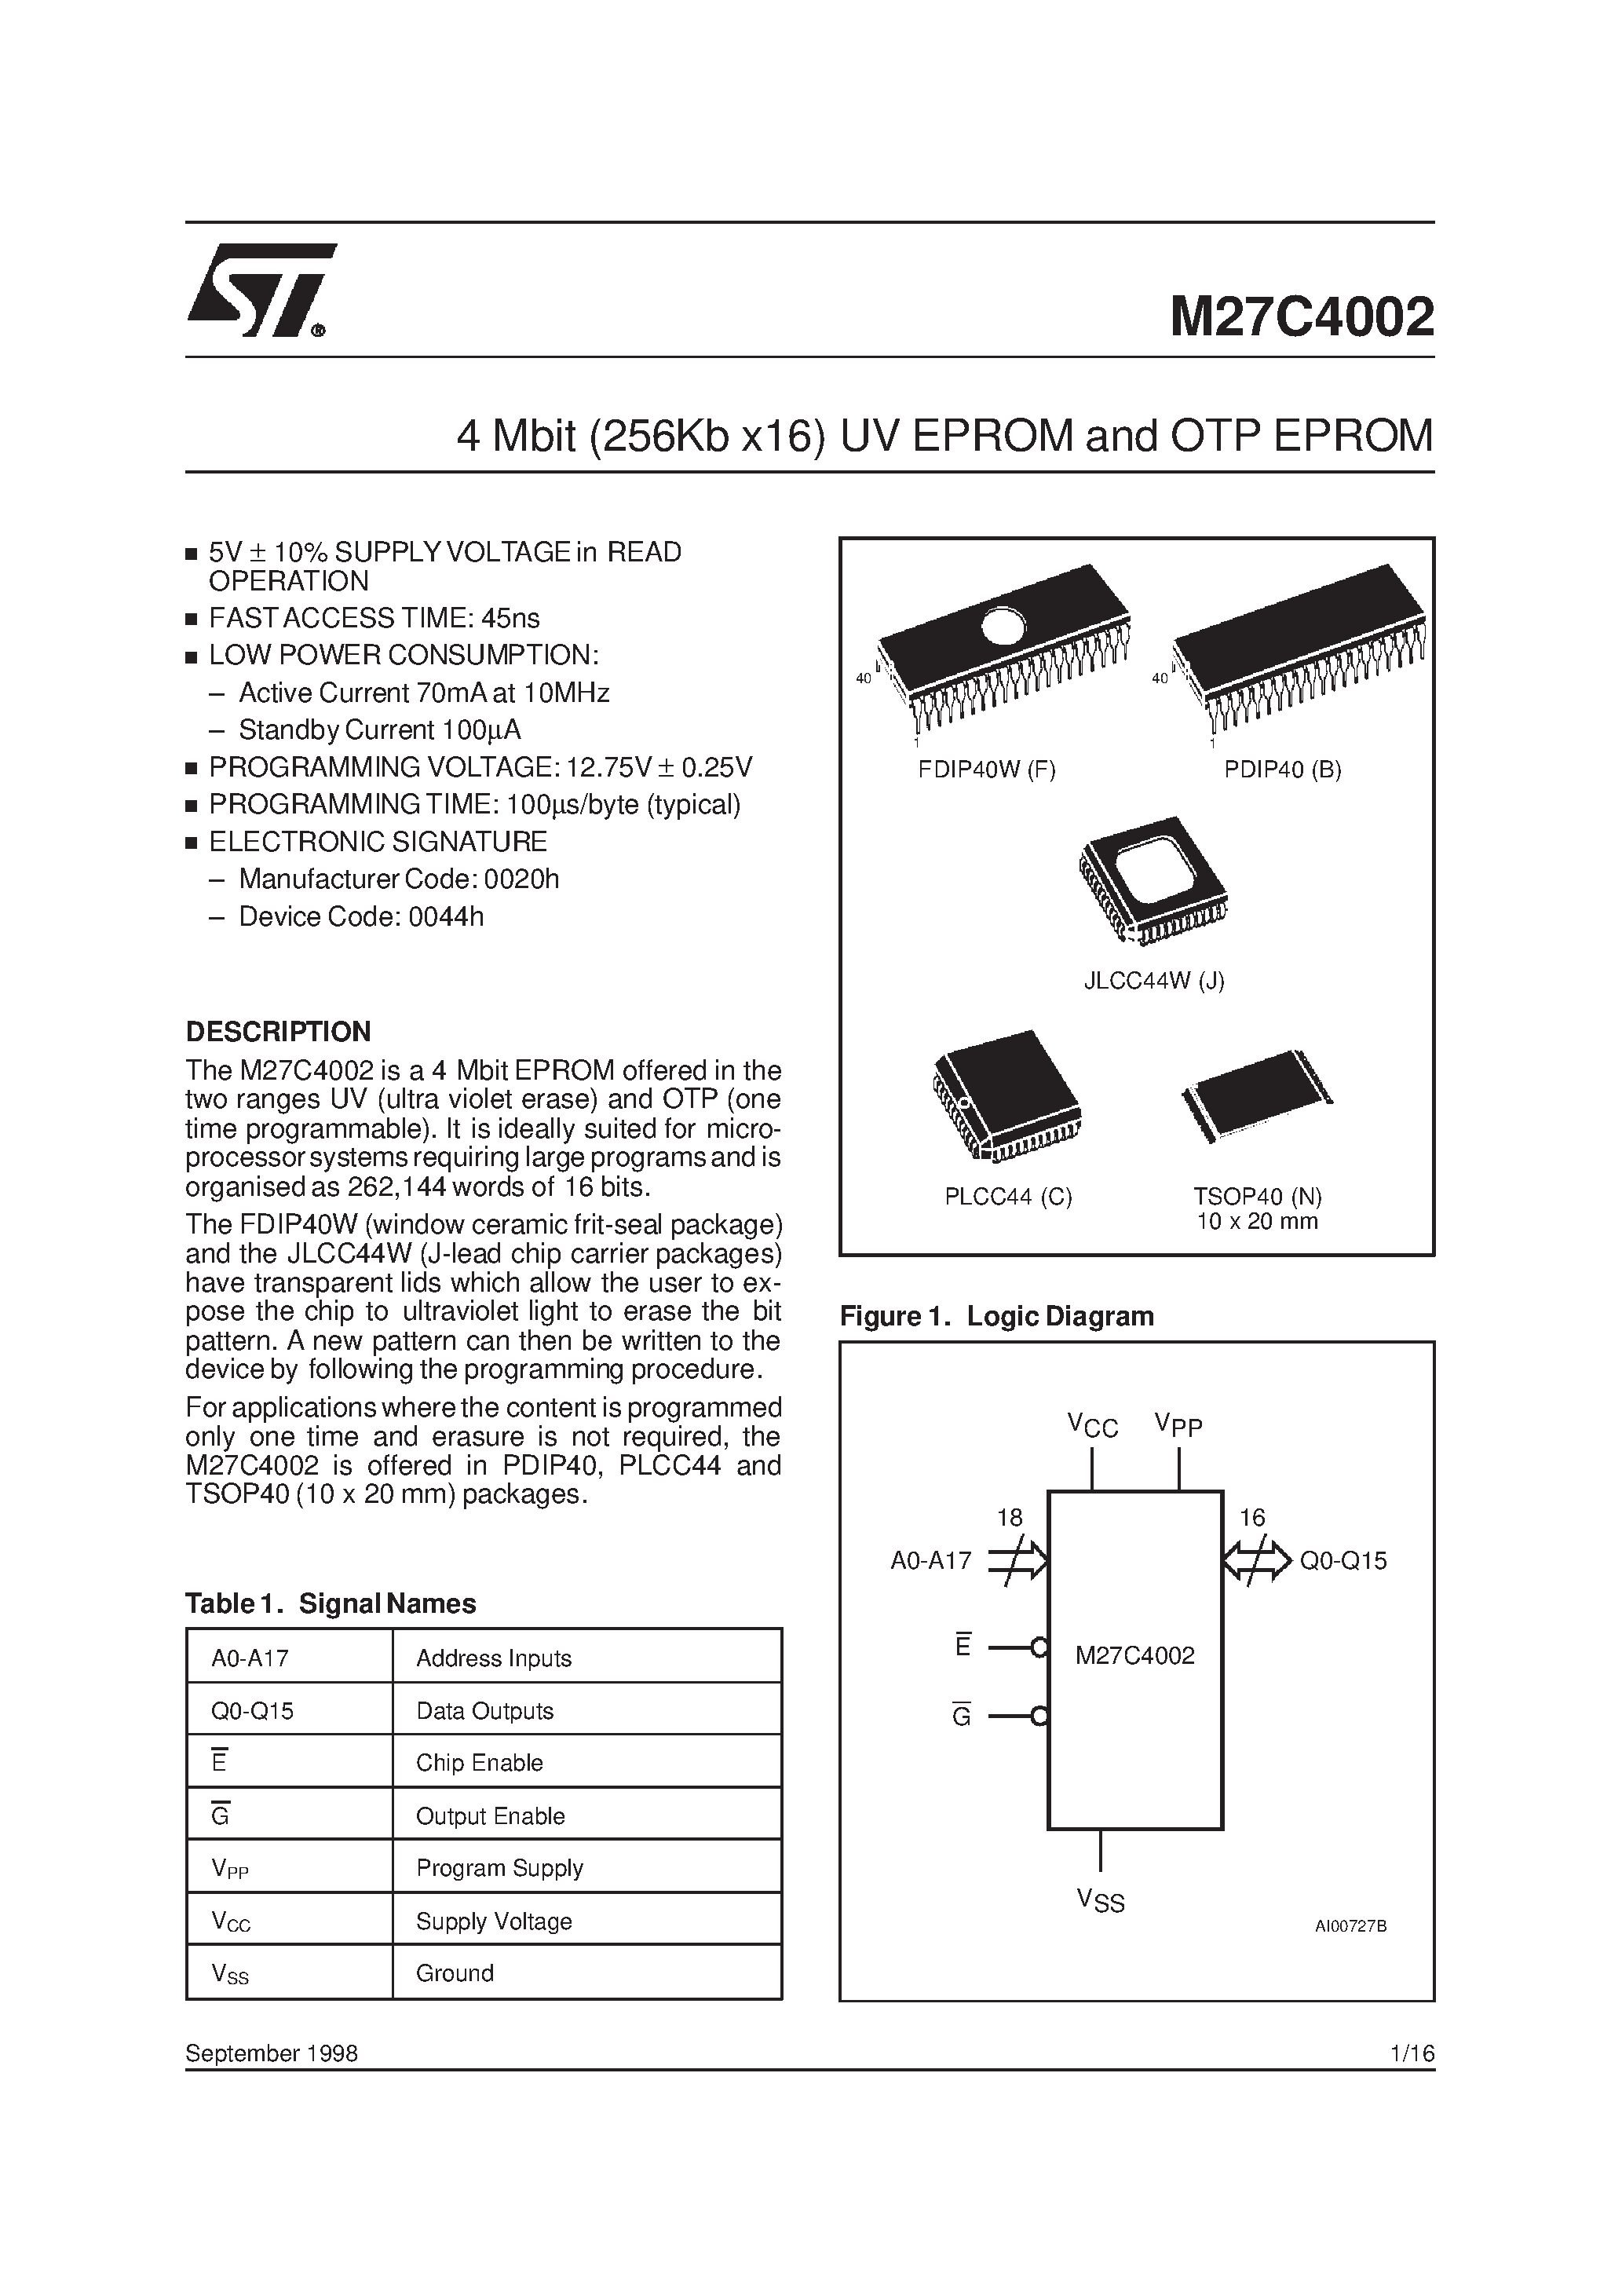 Datasheet M27C4002-12C1X - 4 Mbit 256Kb x16 UV EPROM and OTP EPROM page 1